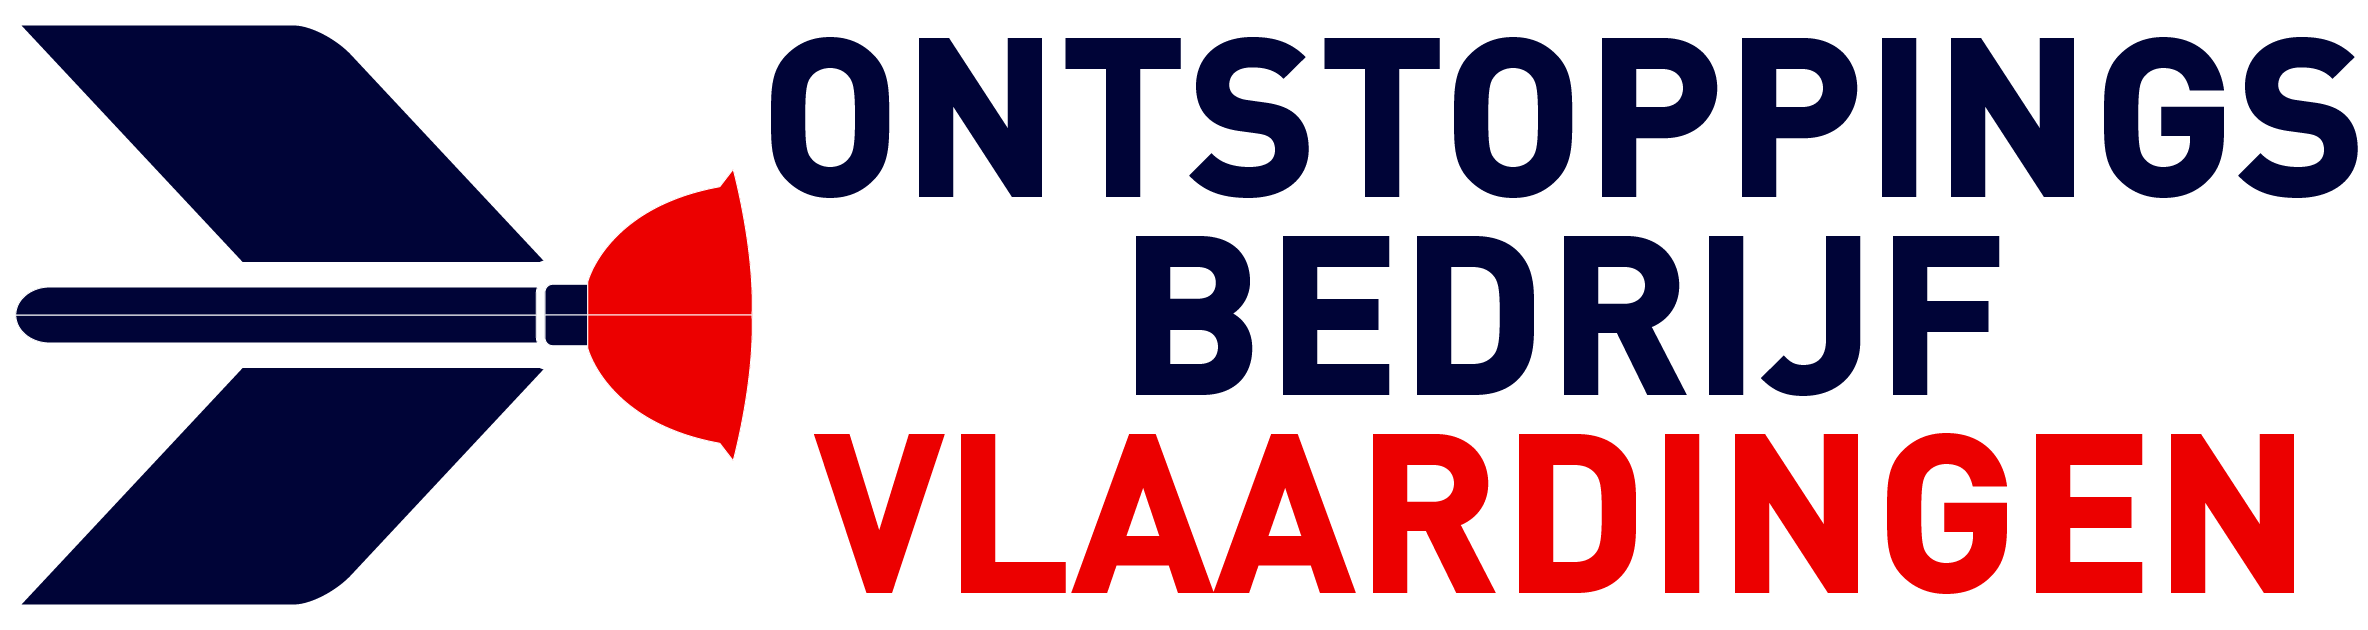 Ontstoppingsbedrijf Vlaardingen logo